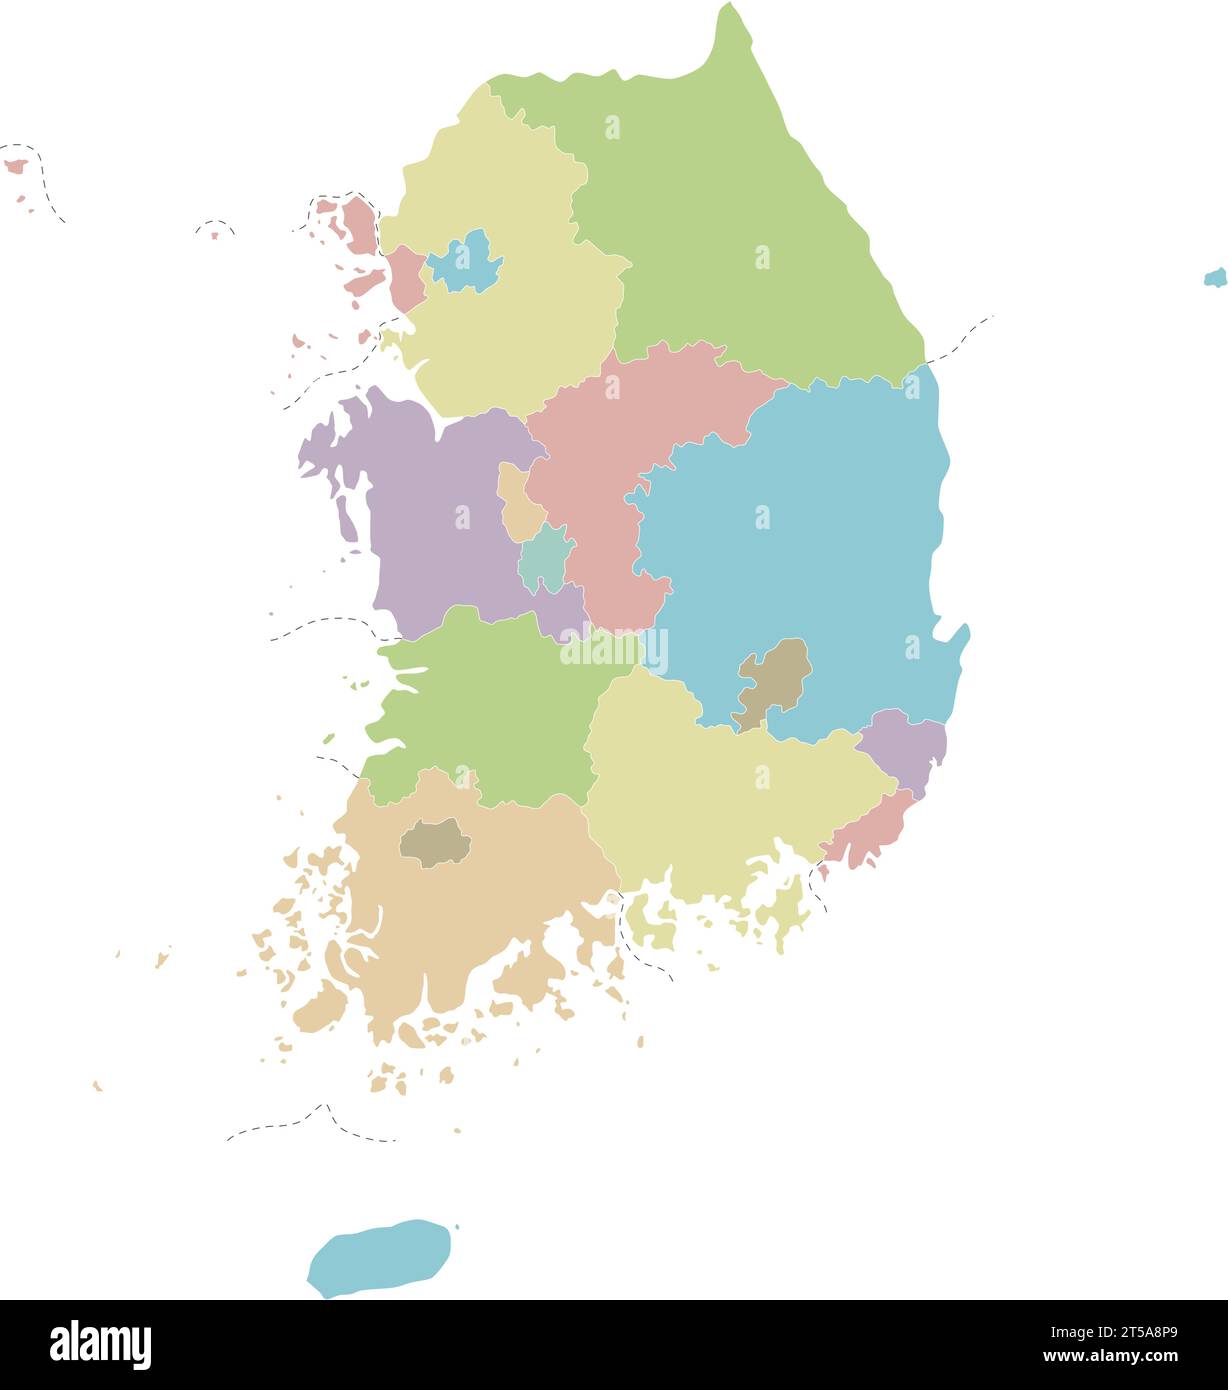 Mappa vettoriale vuota della Corea del Sud con province, città metropolitane e divisioni amministrative. Livelli modificabili e chiaramente etichettati. Illustrazione Vettoriale